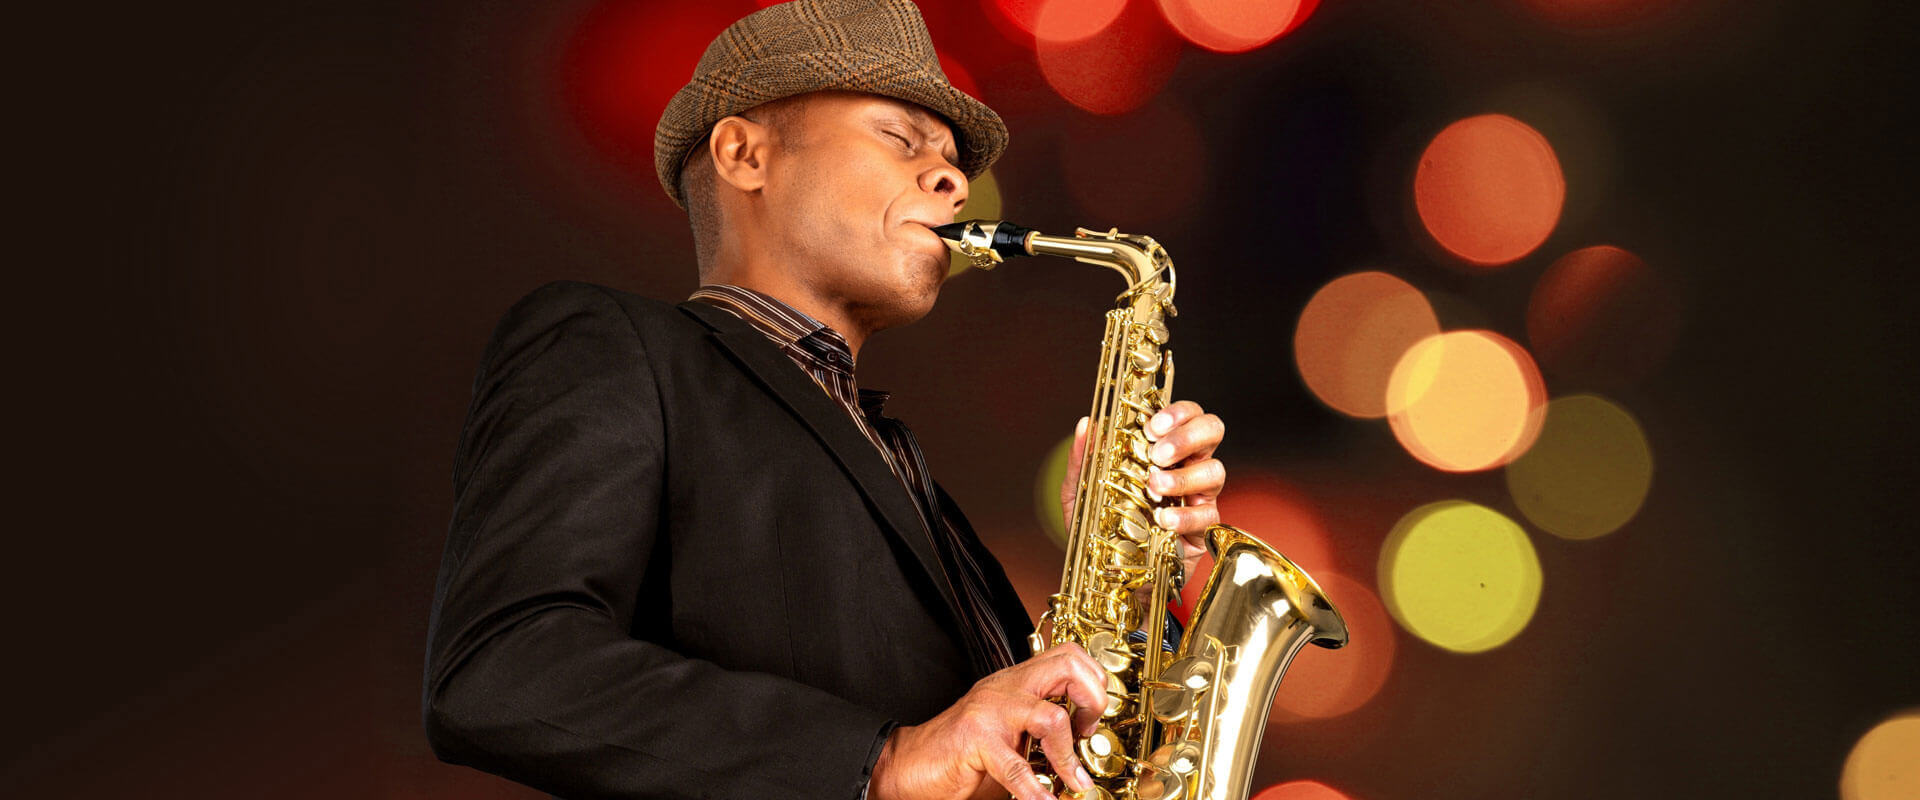 Saxophone Lessons Von Ormy , TX